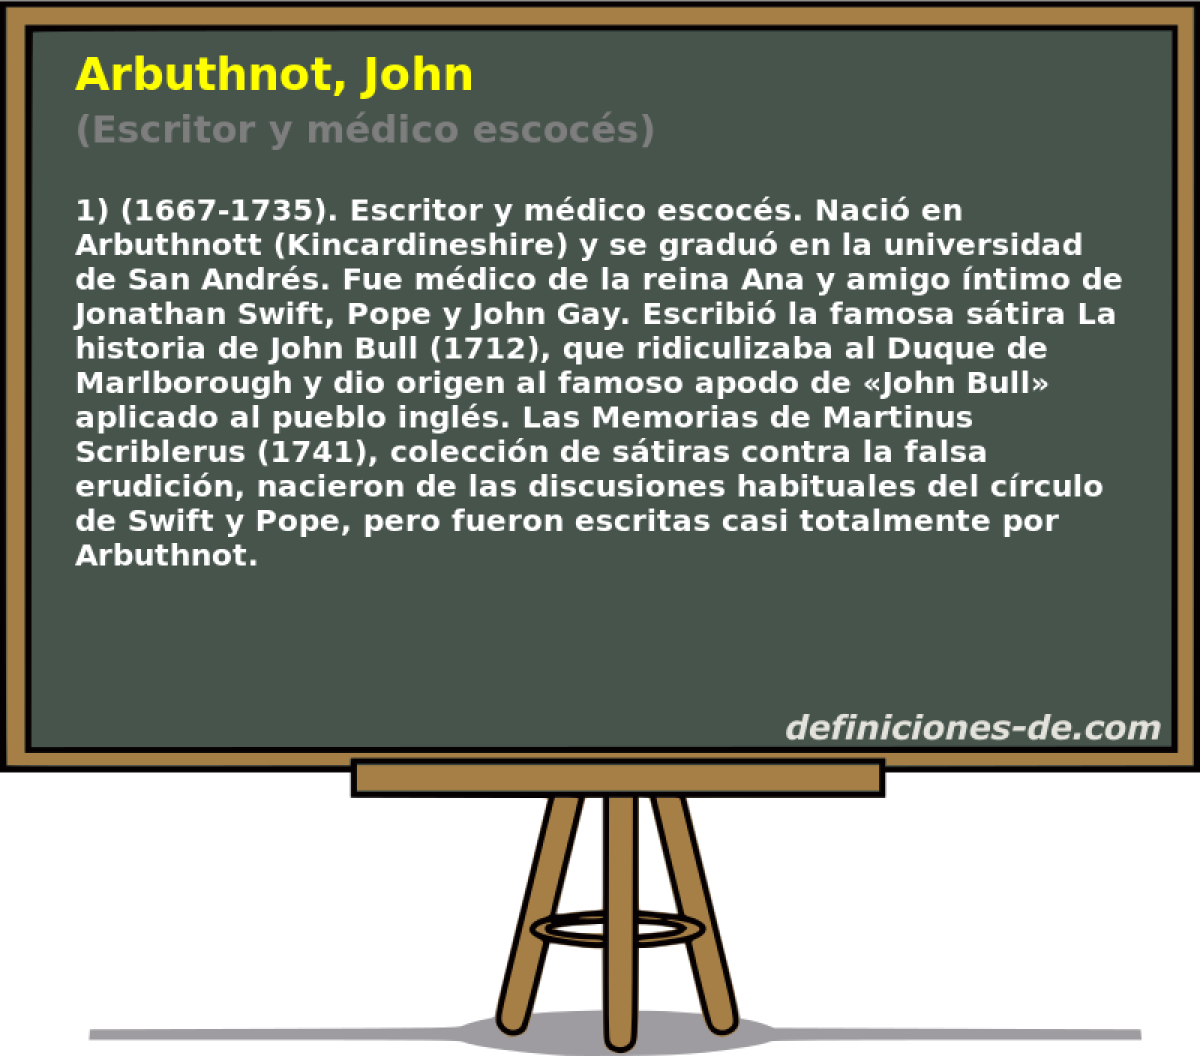 Arbuthnot, John (Escritor y mdico escocs)